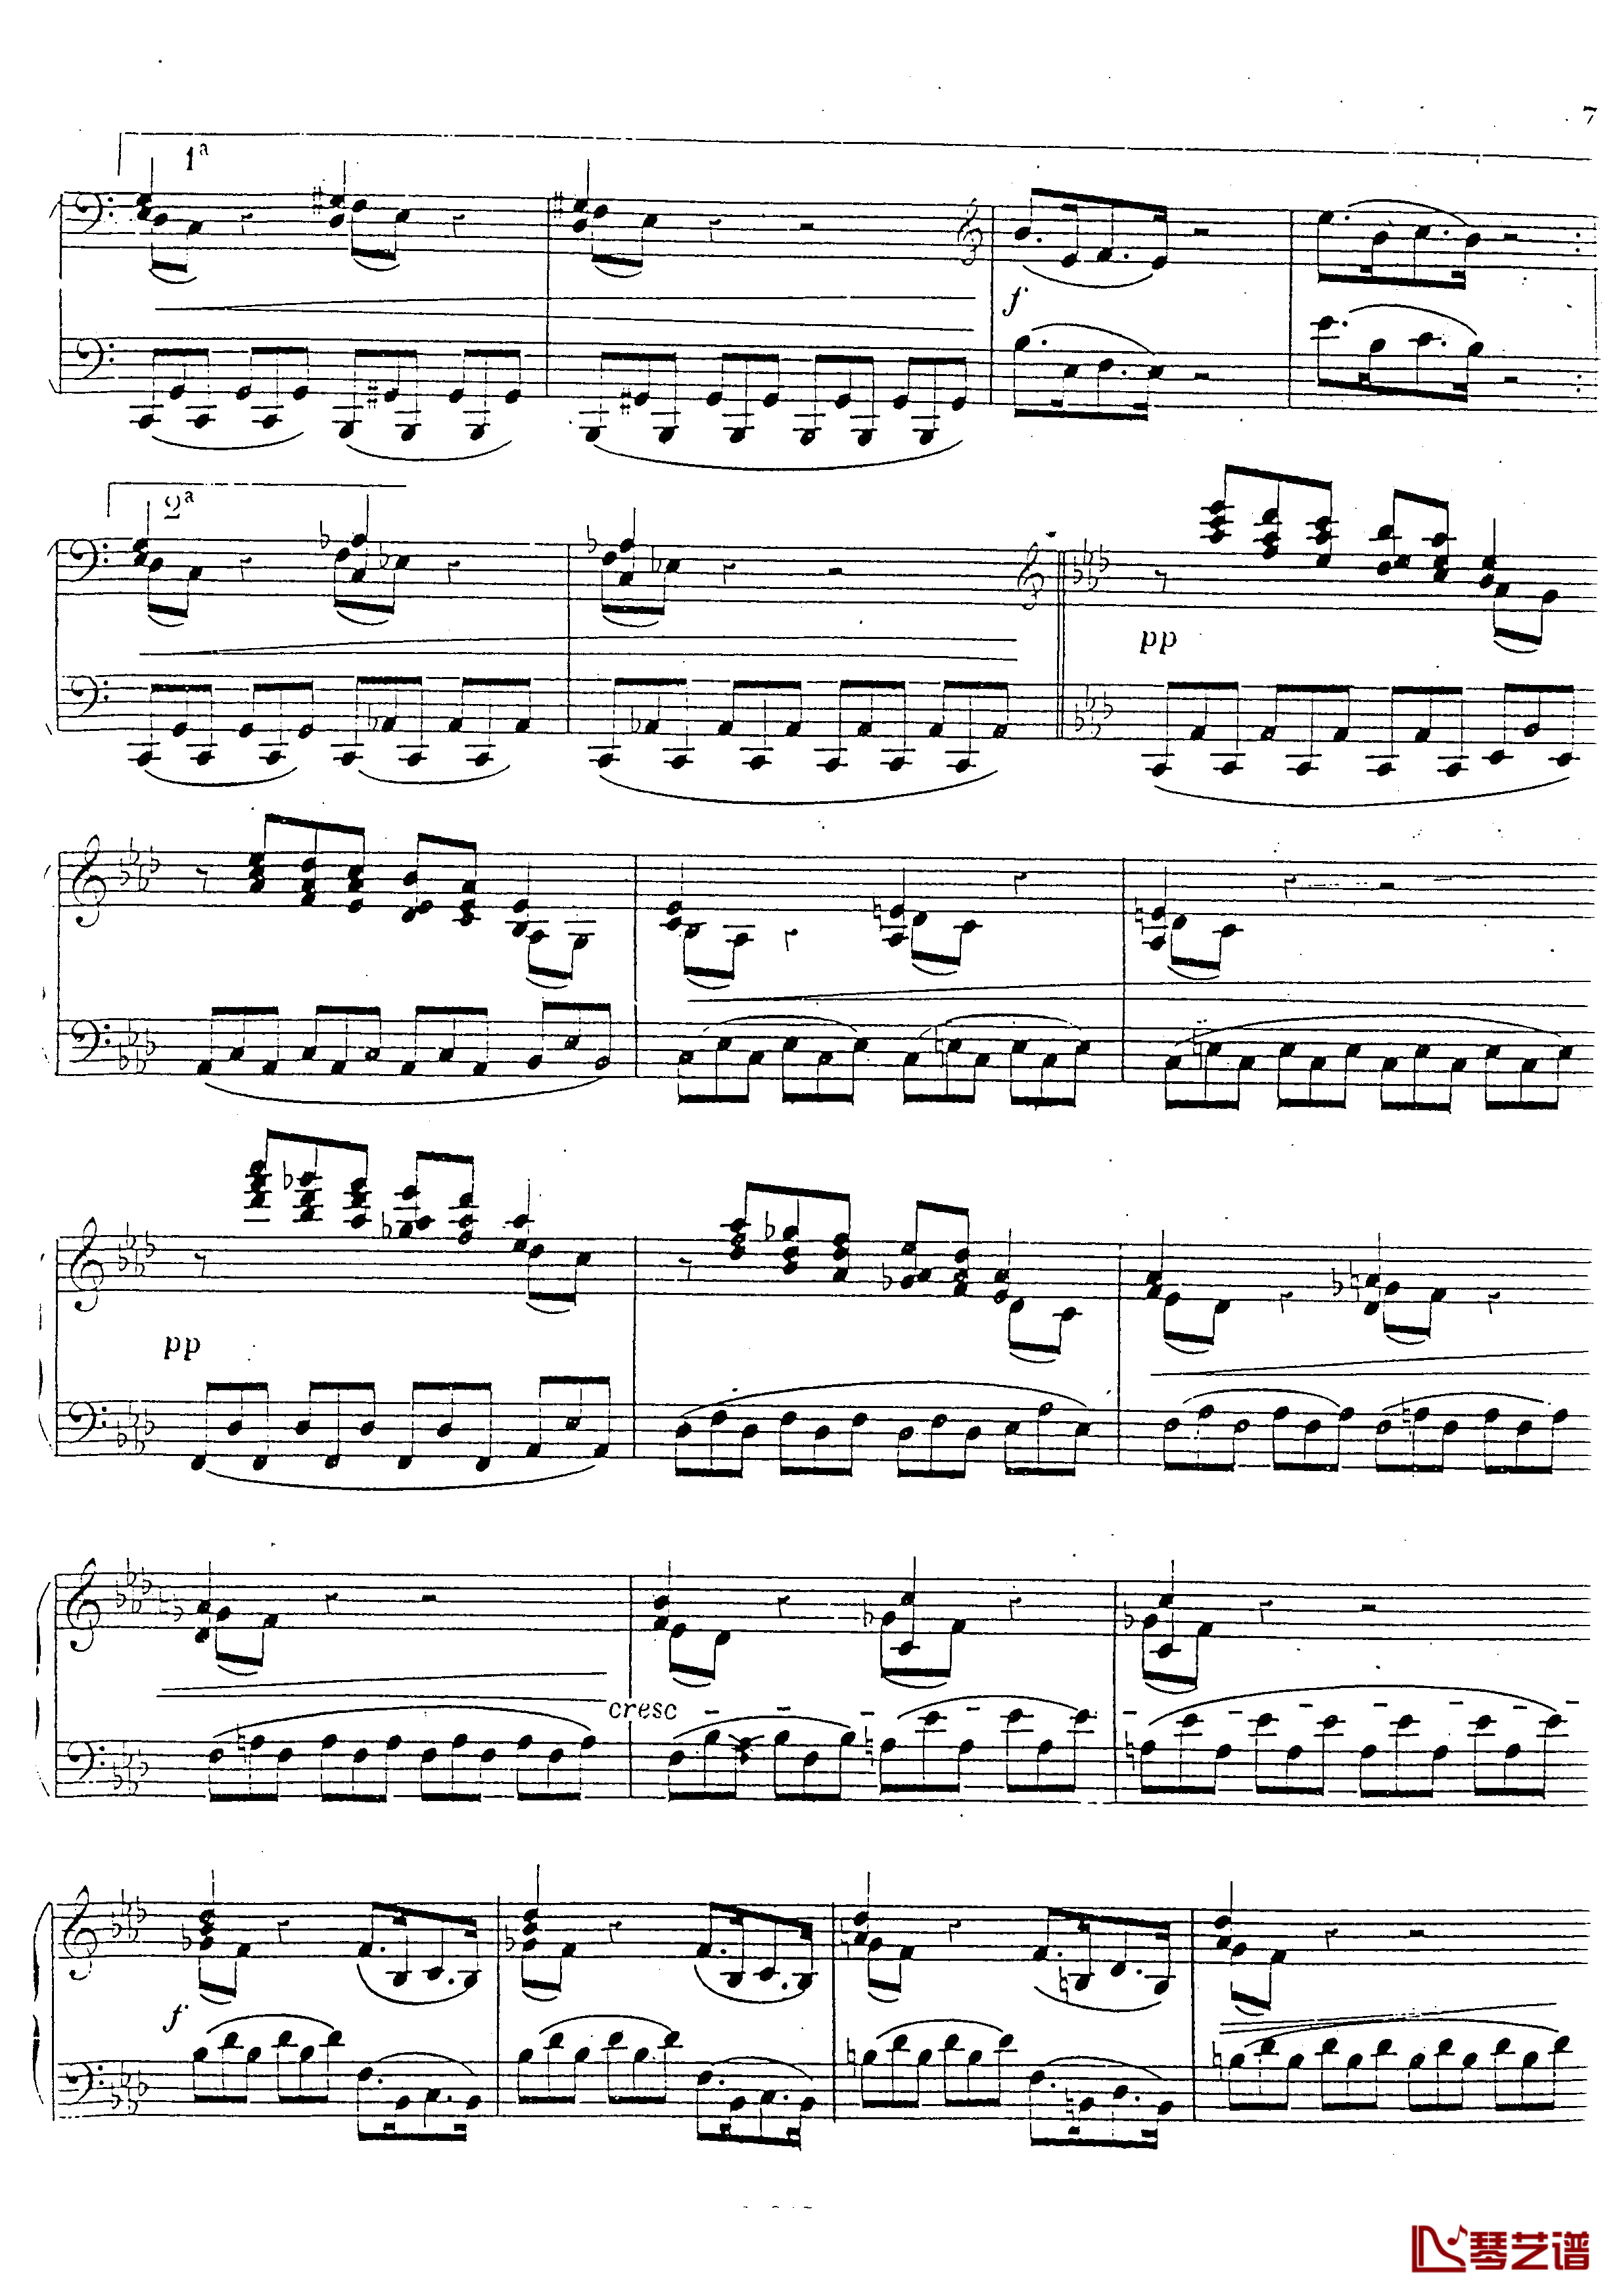 a小调第四钢琴奏鸣曲钢琴谱-安东 鲁宾斯坦- Op.1008